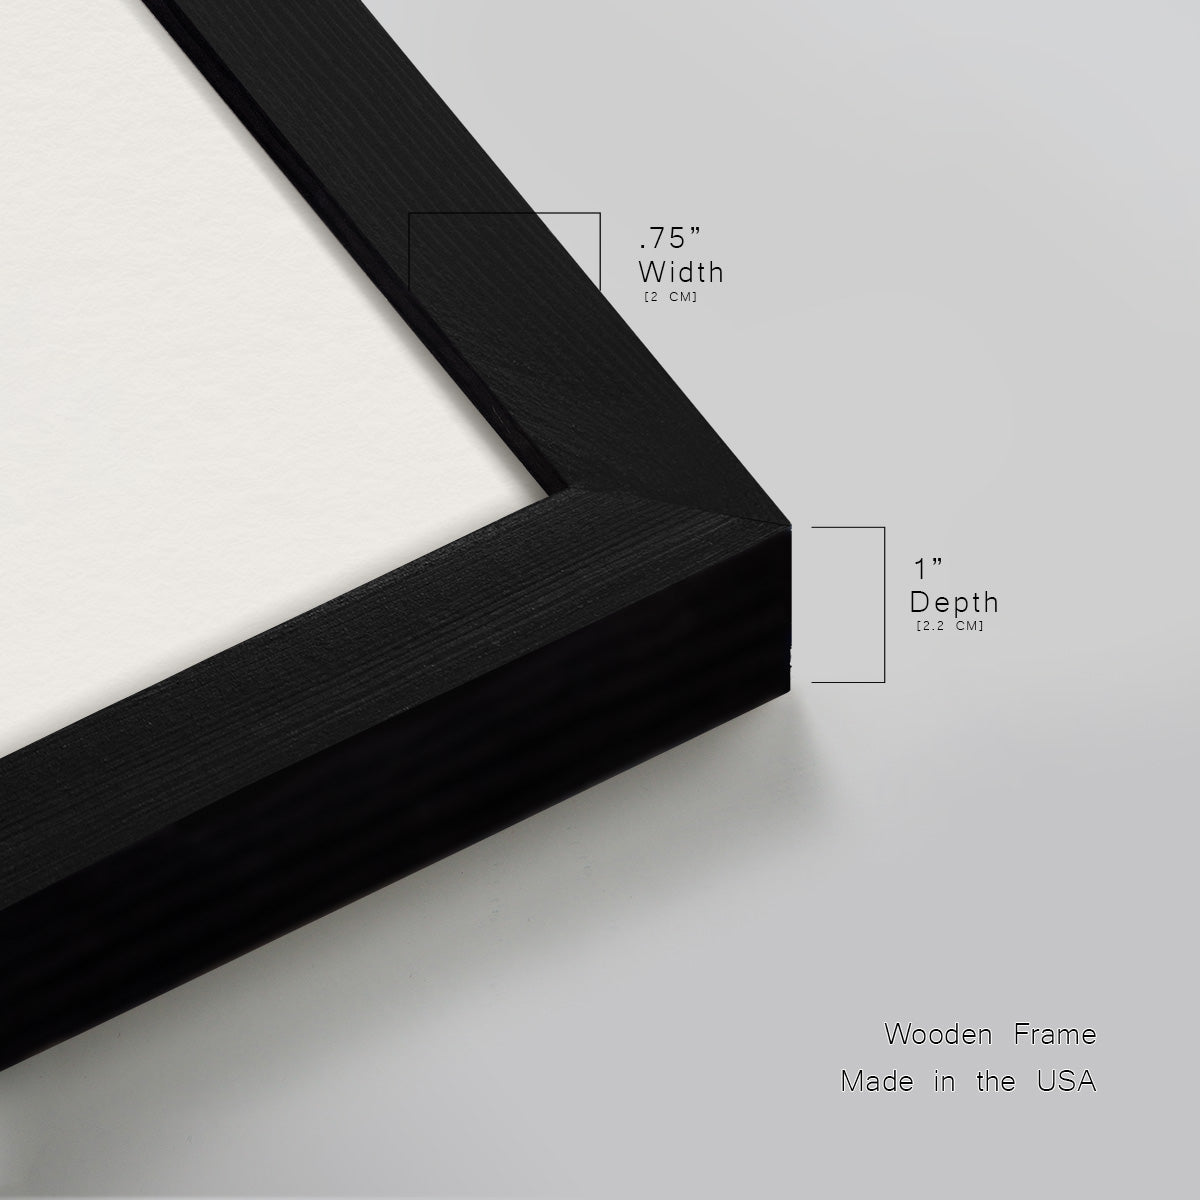 Anza Borrego Desert Premium Framed Print Double Matboard